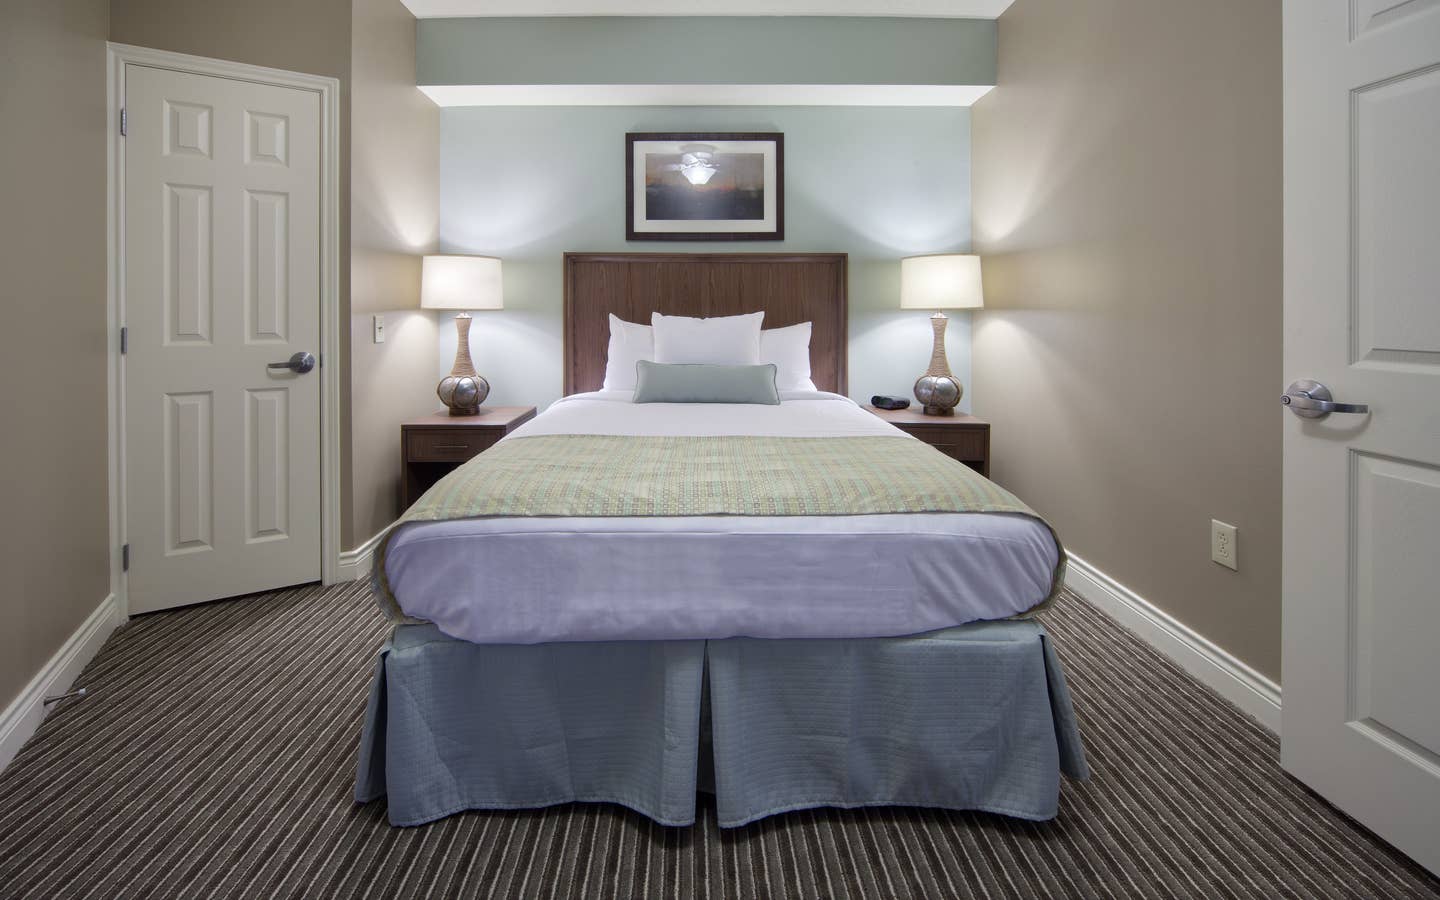 Guest bedroom in a villa at Galveston Beach Resort